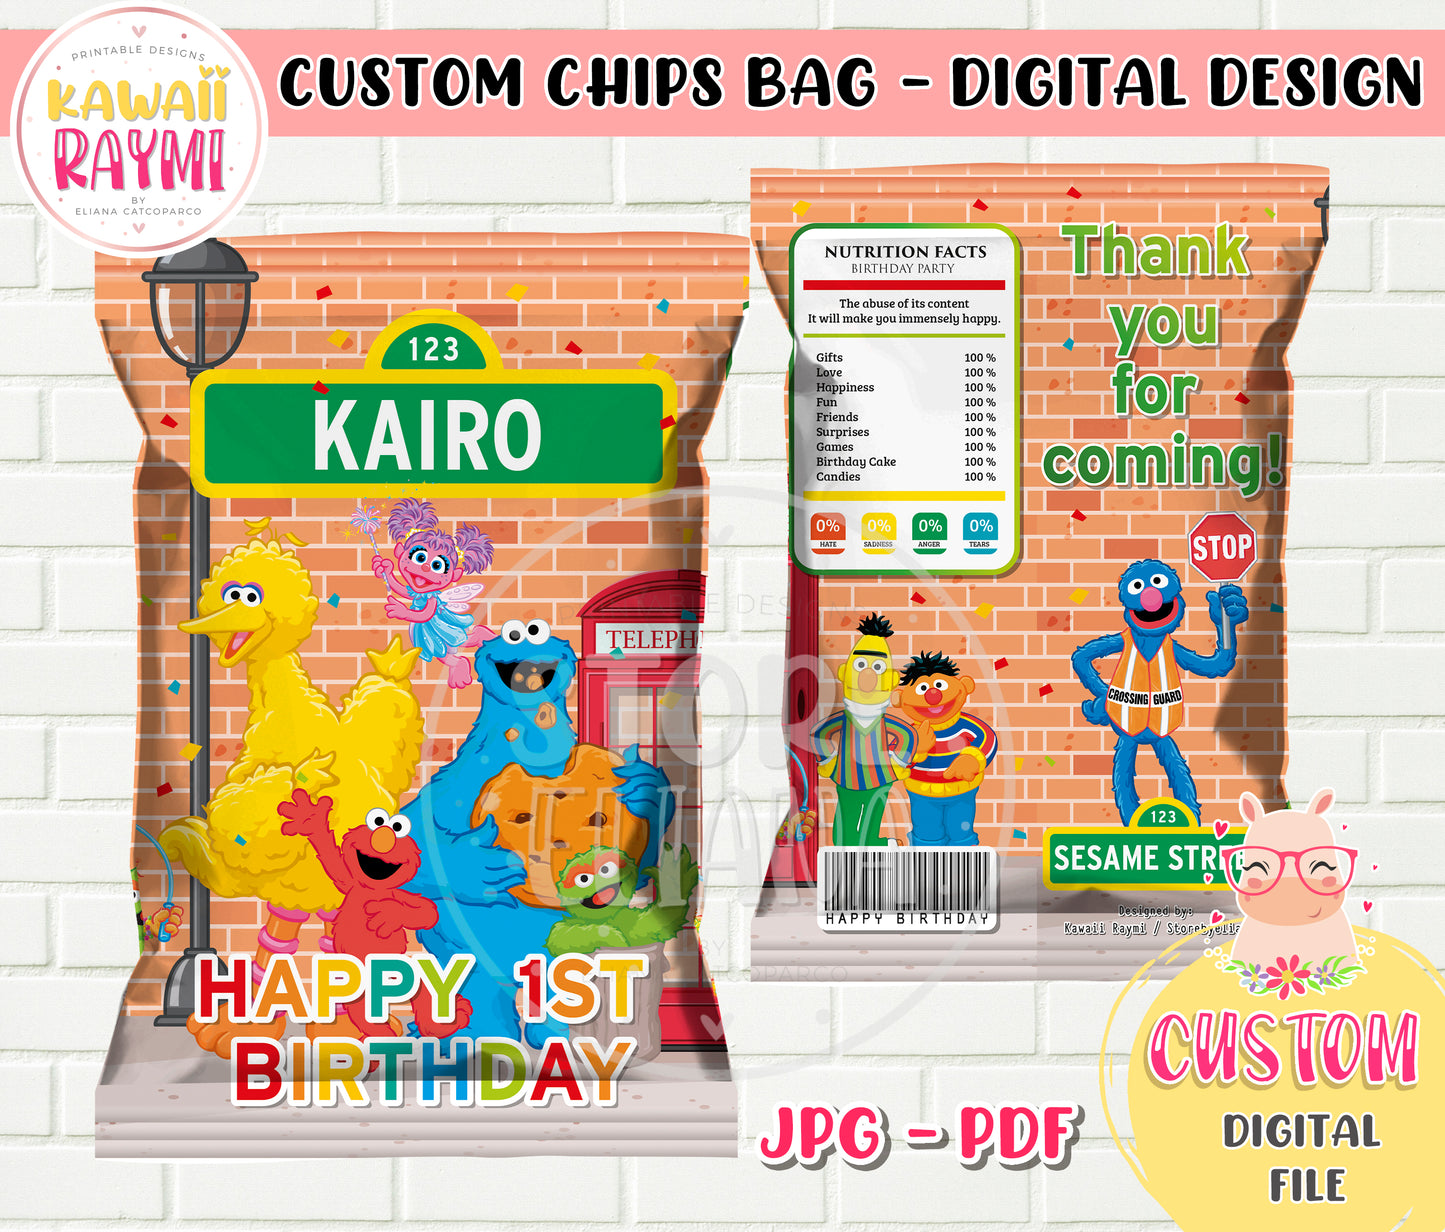 Sesame Street custom Chips bag DIGITAL FILE